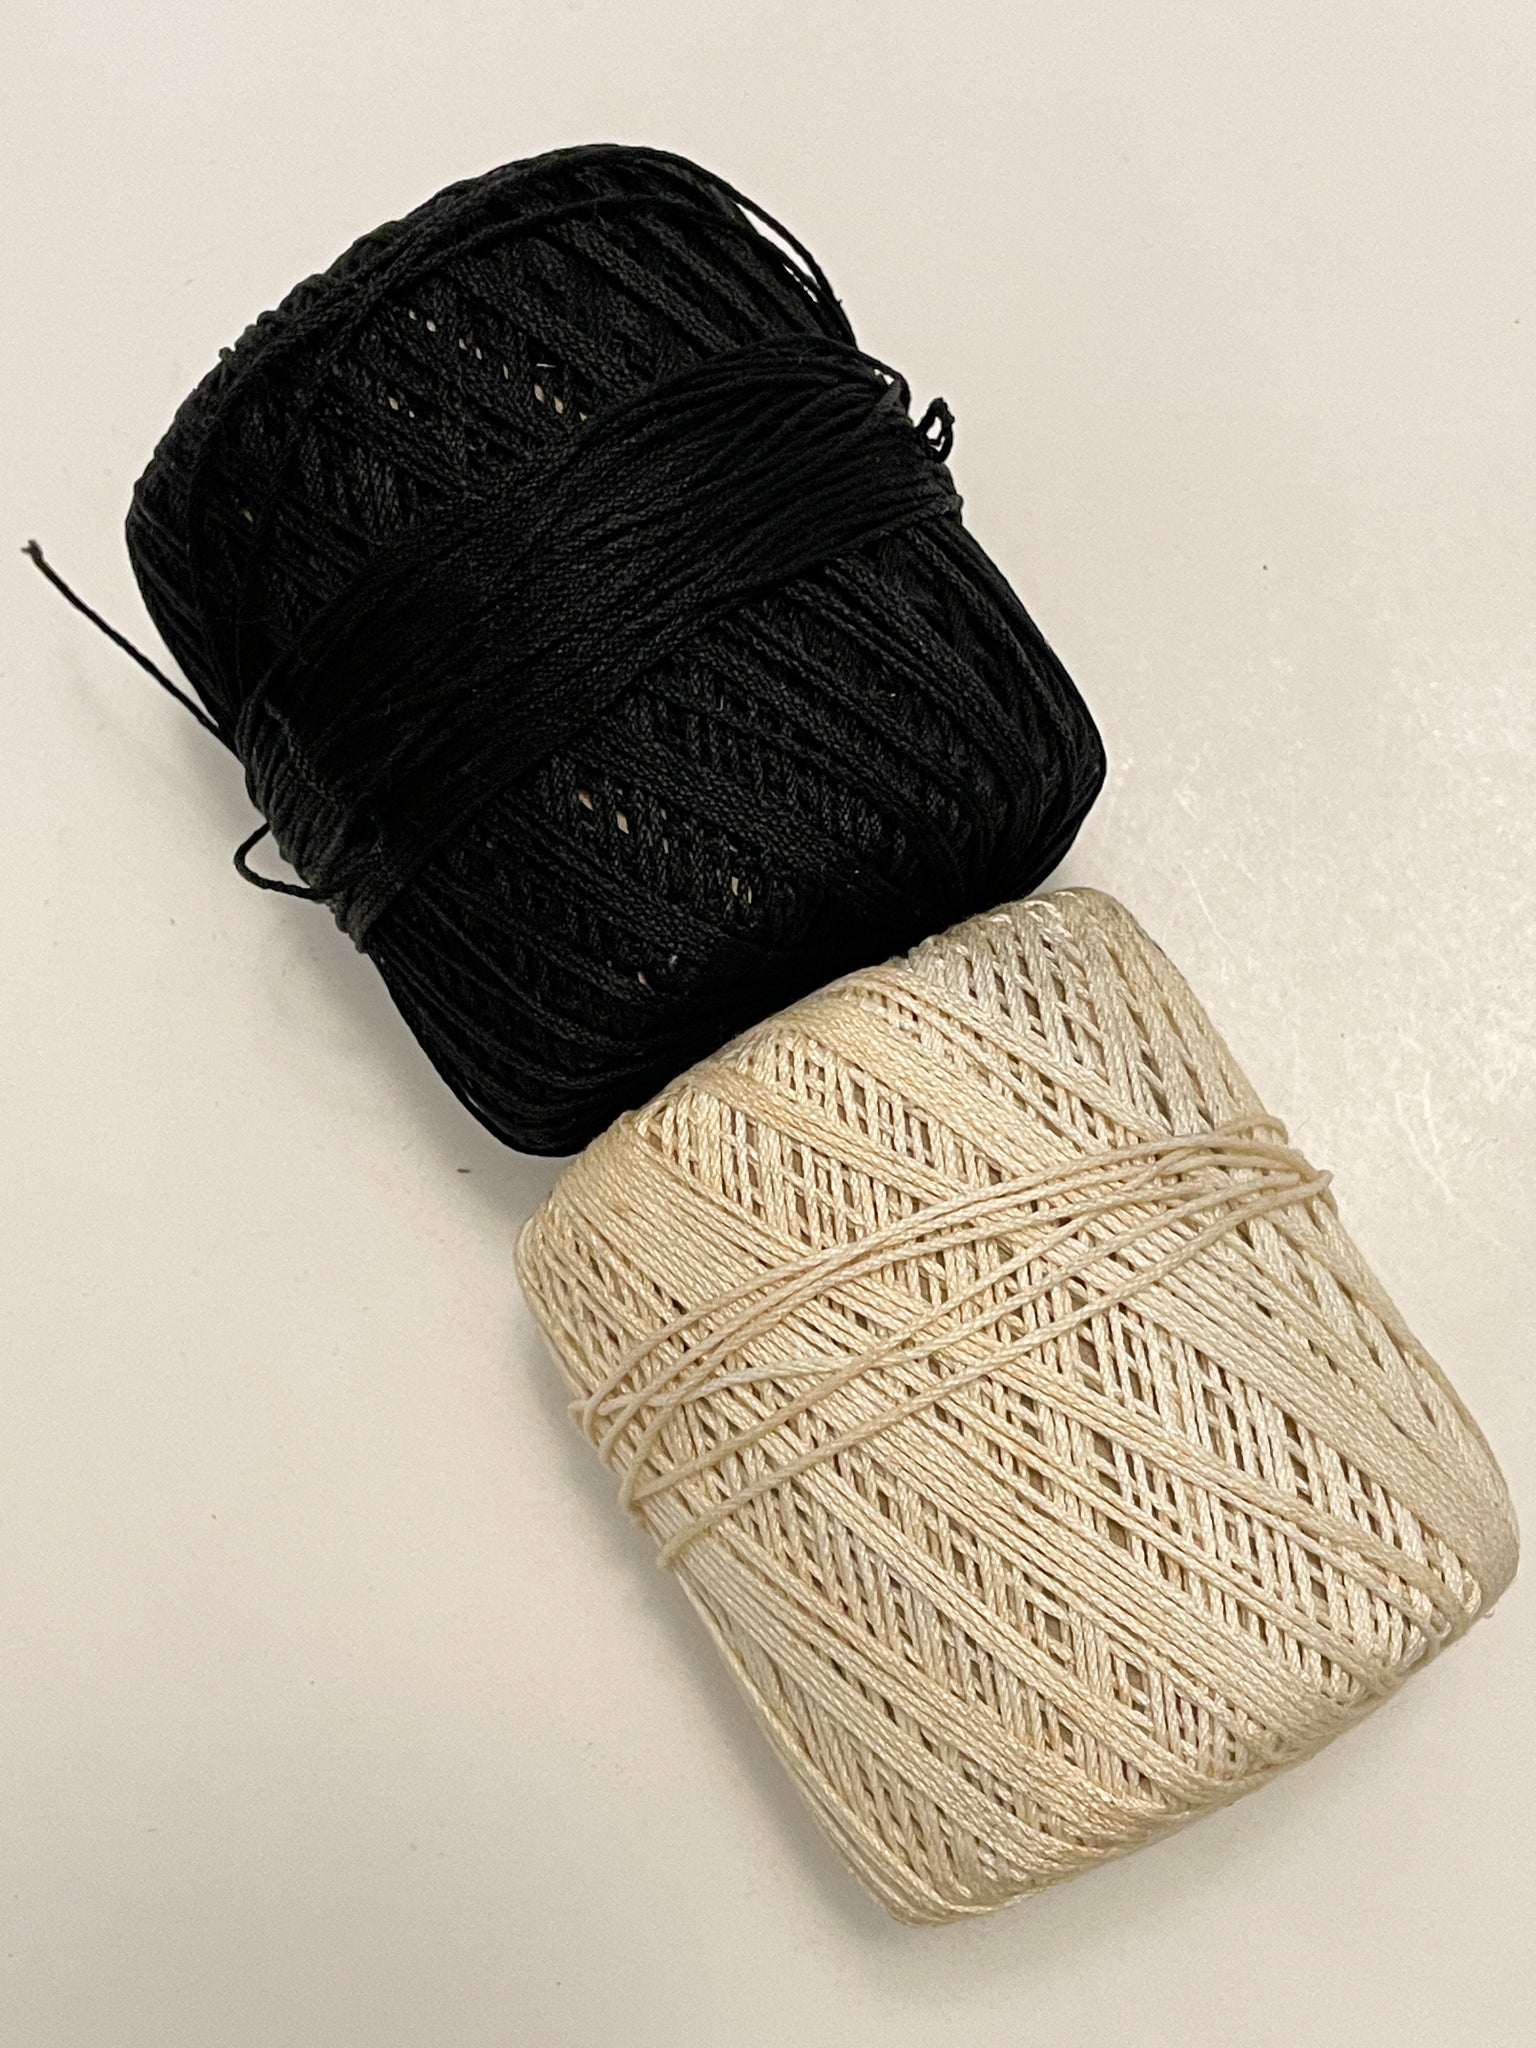 SALE Cotton Crochet Bundle Vintage Thread Remnants - Black and Off White